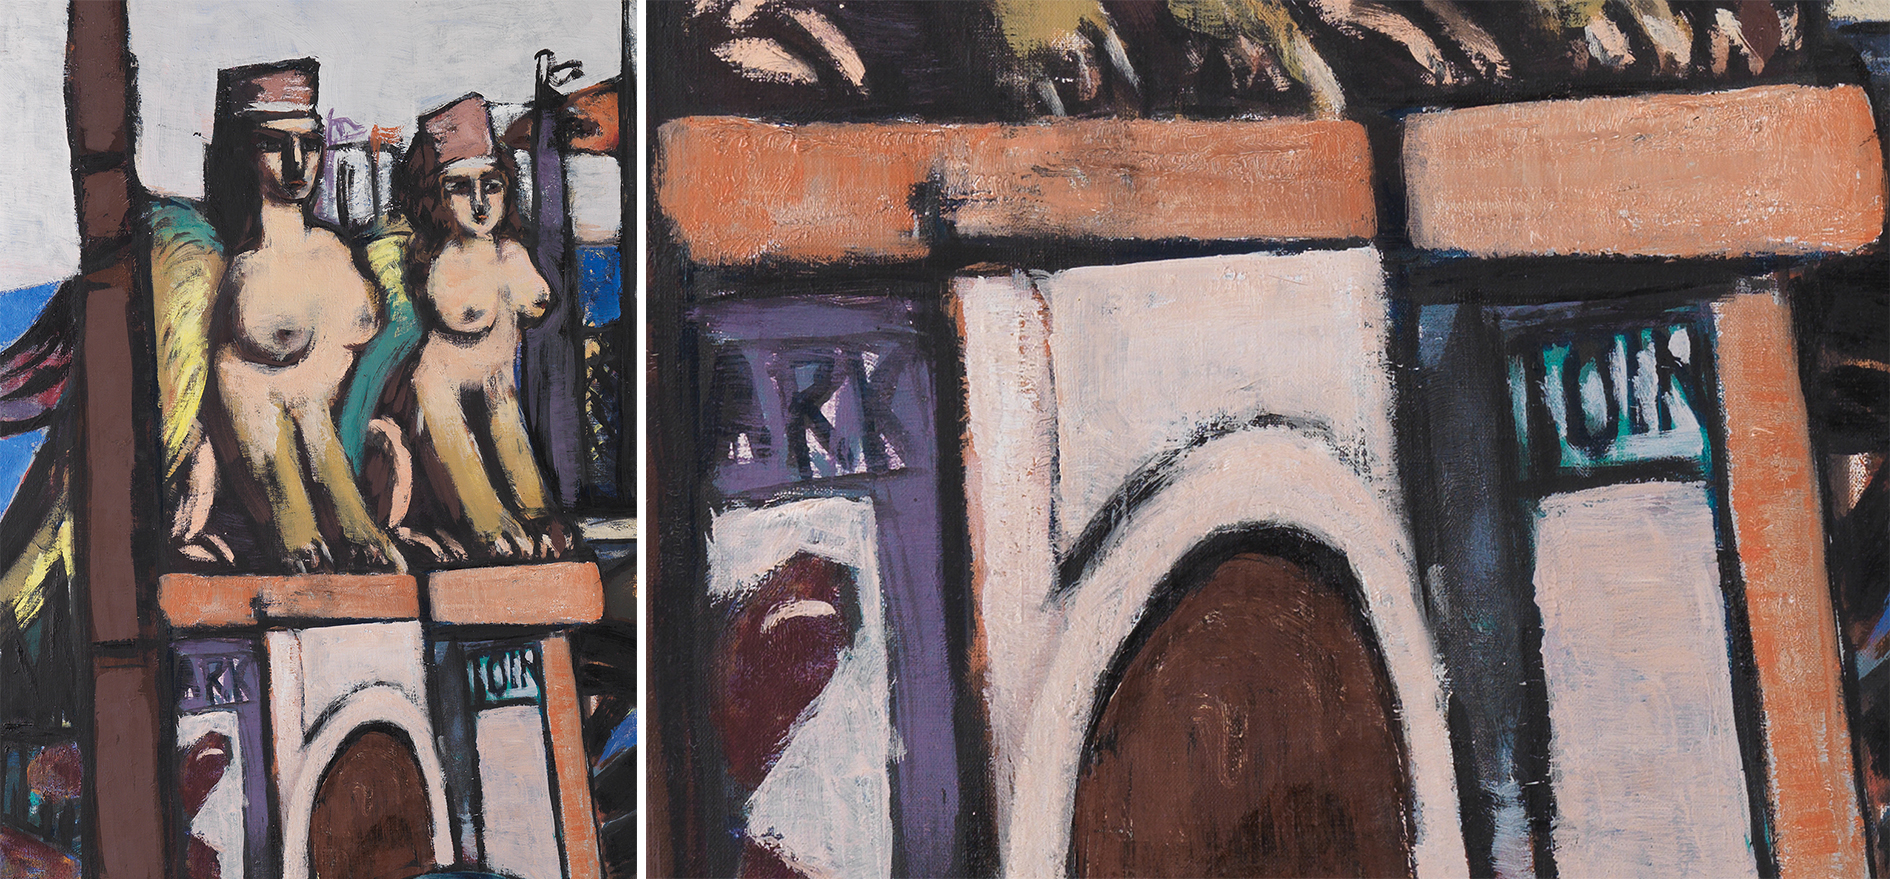 Links: Ausschnitt aus Max Beckmanns Gemälde Abtransport der Sphinxe. Detail von zwei Sphinxen auf einem Torbogen. Rechts: Ausschnitt aus Max Beckmanns Gemälde Abtransport der Sphinxe. Torbogen mit der Aufschrift ARK und TOIR.